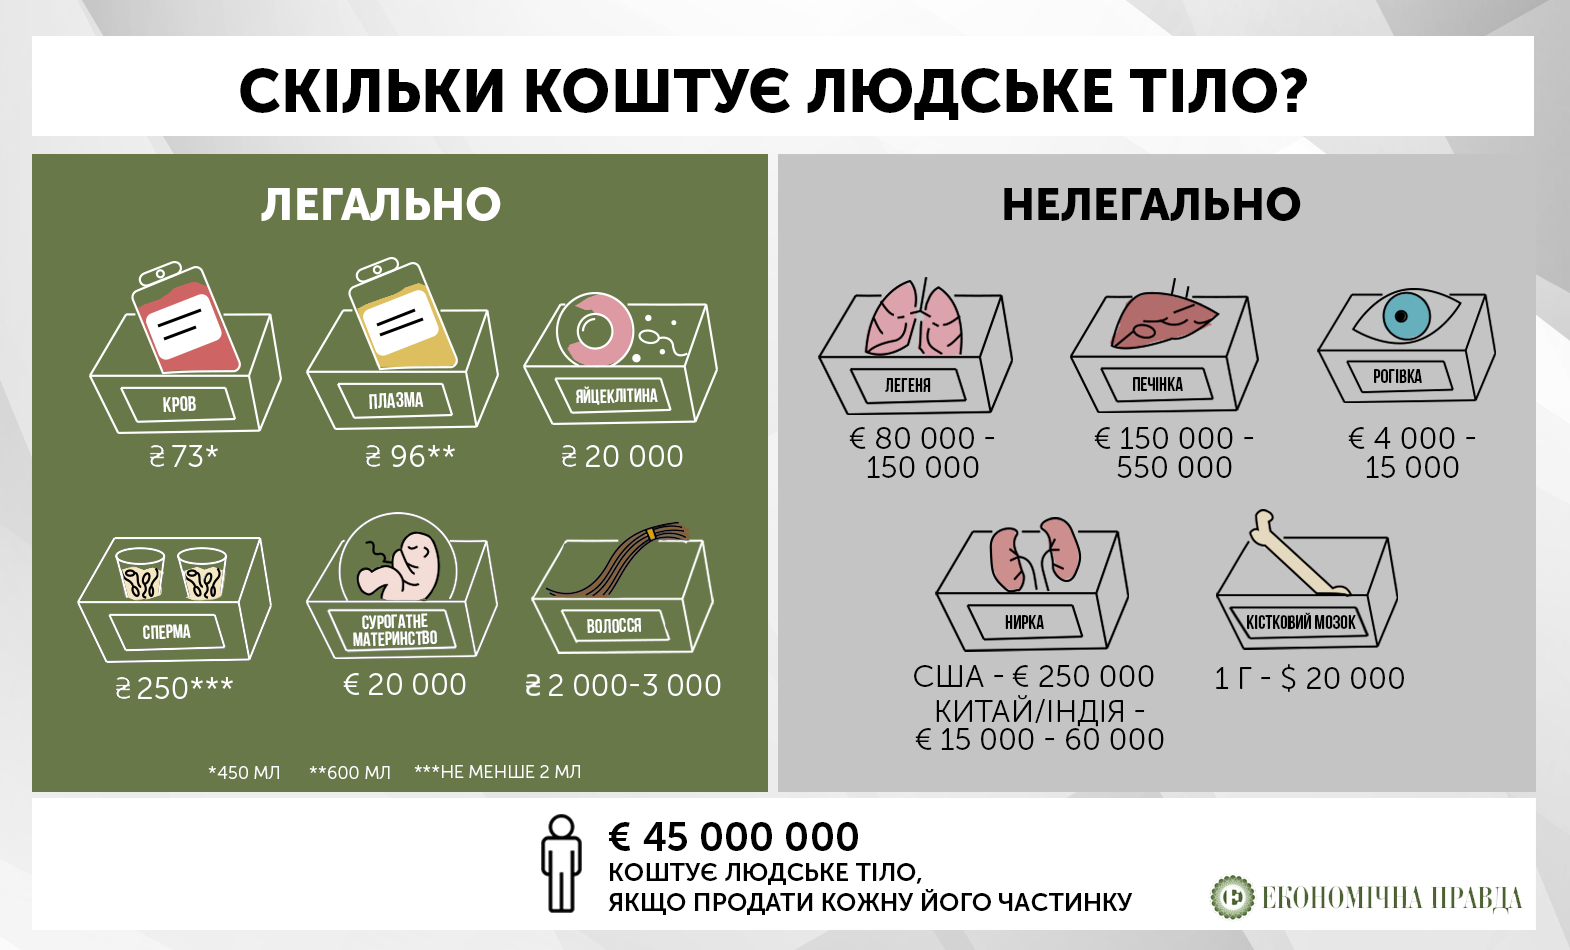 Сколько стоит человек в россии в рублях